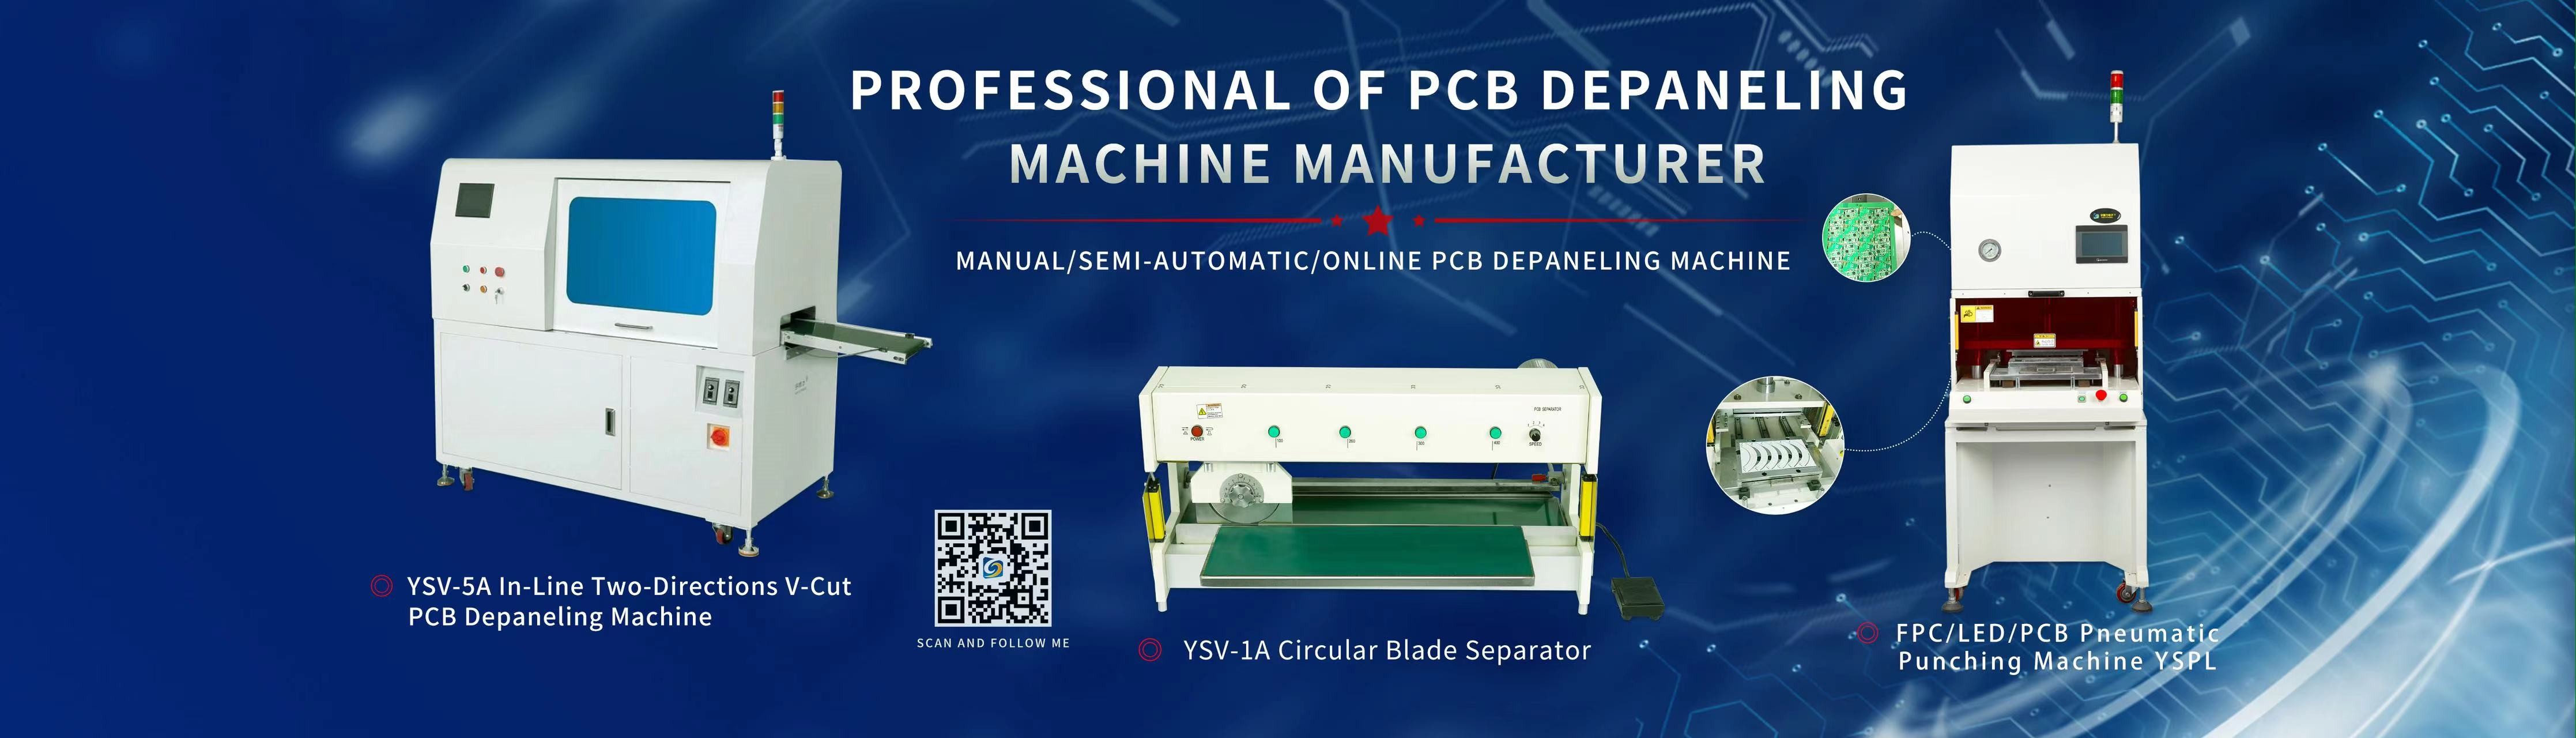 ποιότητας depaneling μηχανή PCB εργοστάσιο